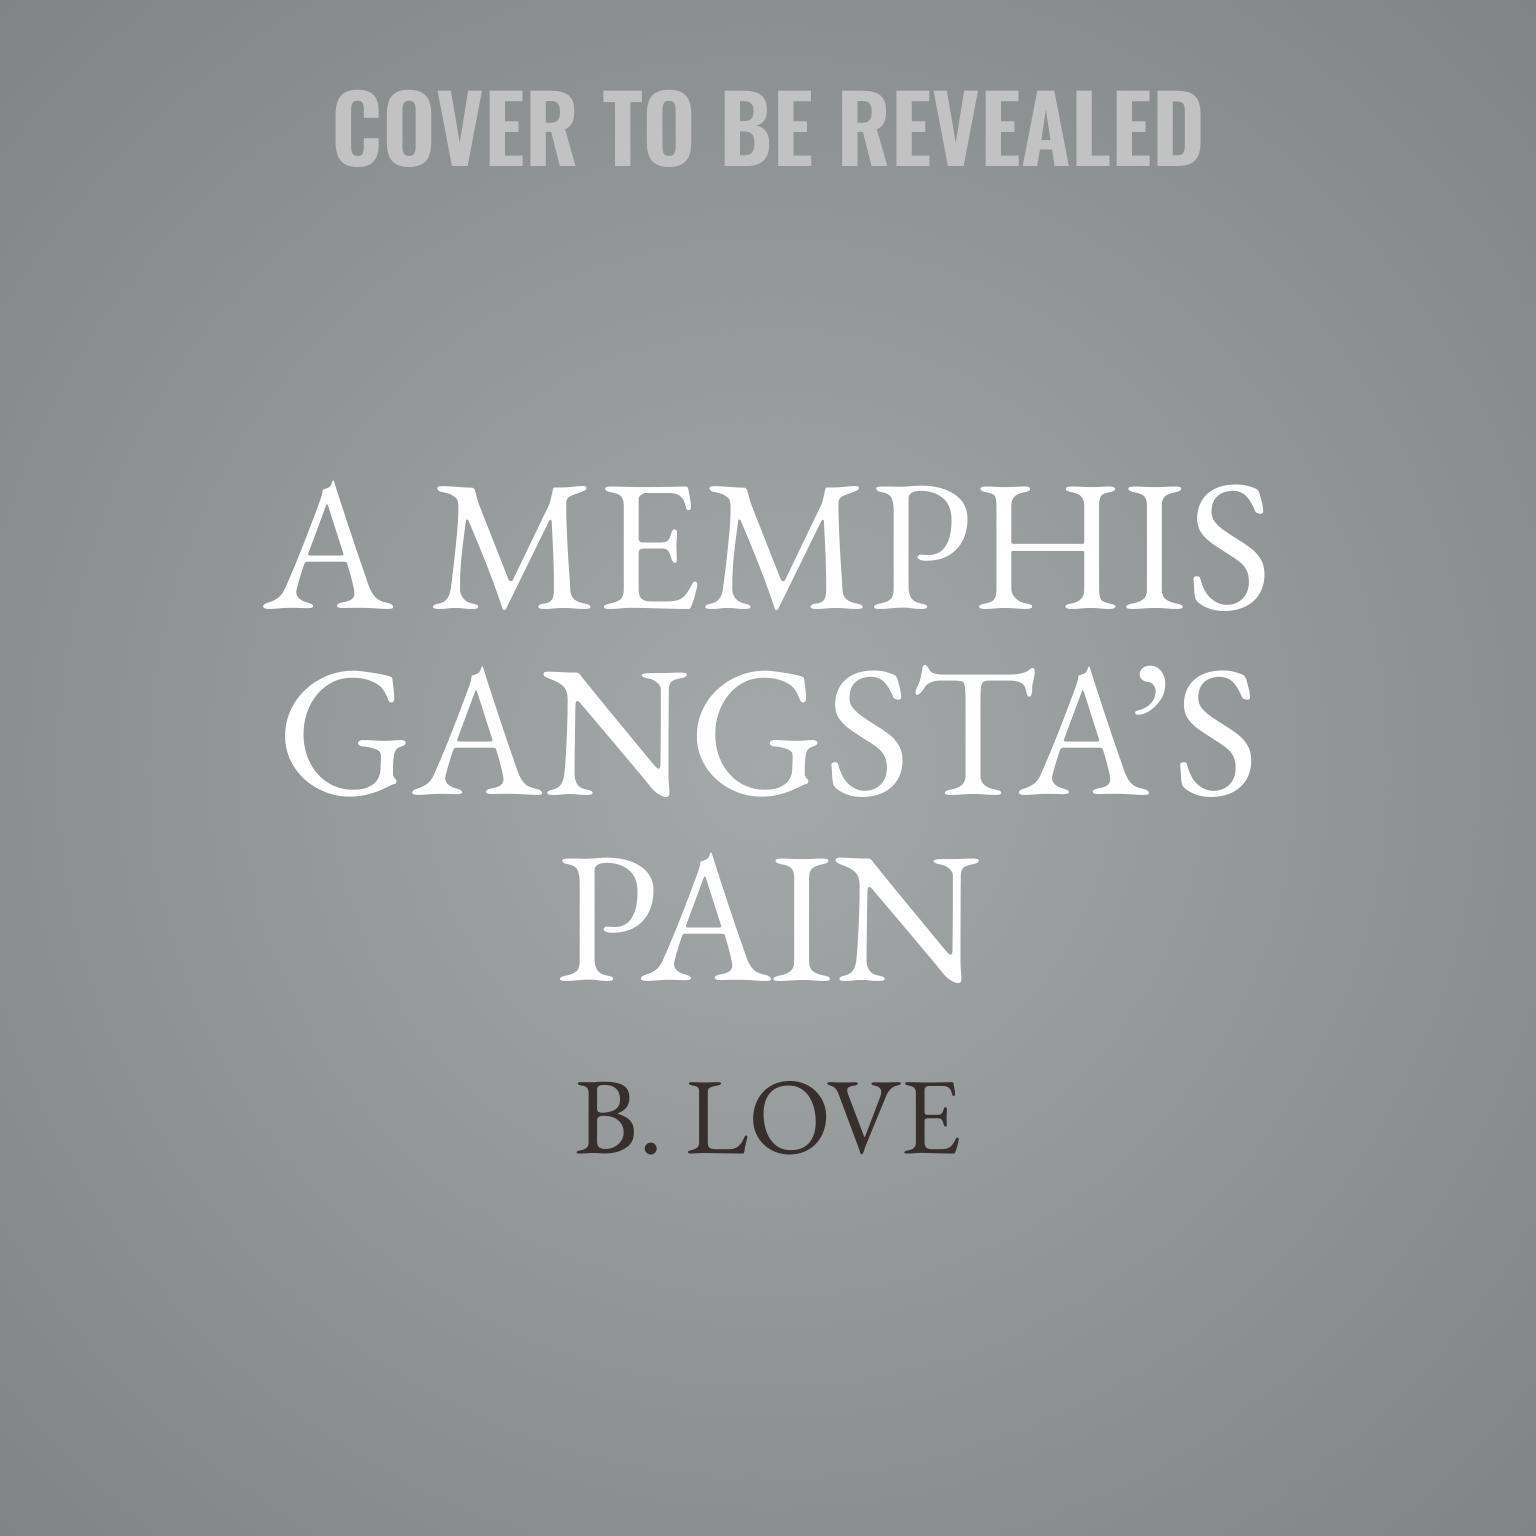 A Memphis Gangsta’s Pain Audiobook, by B. Love